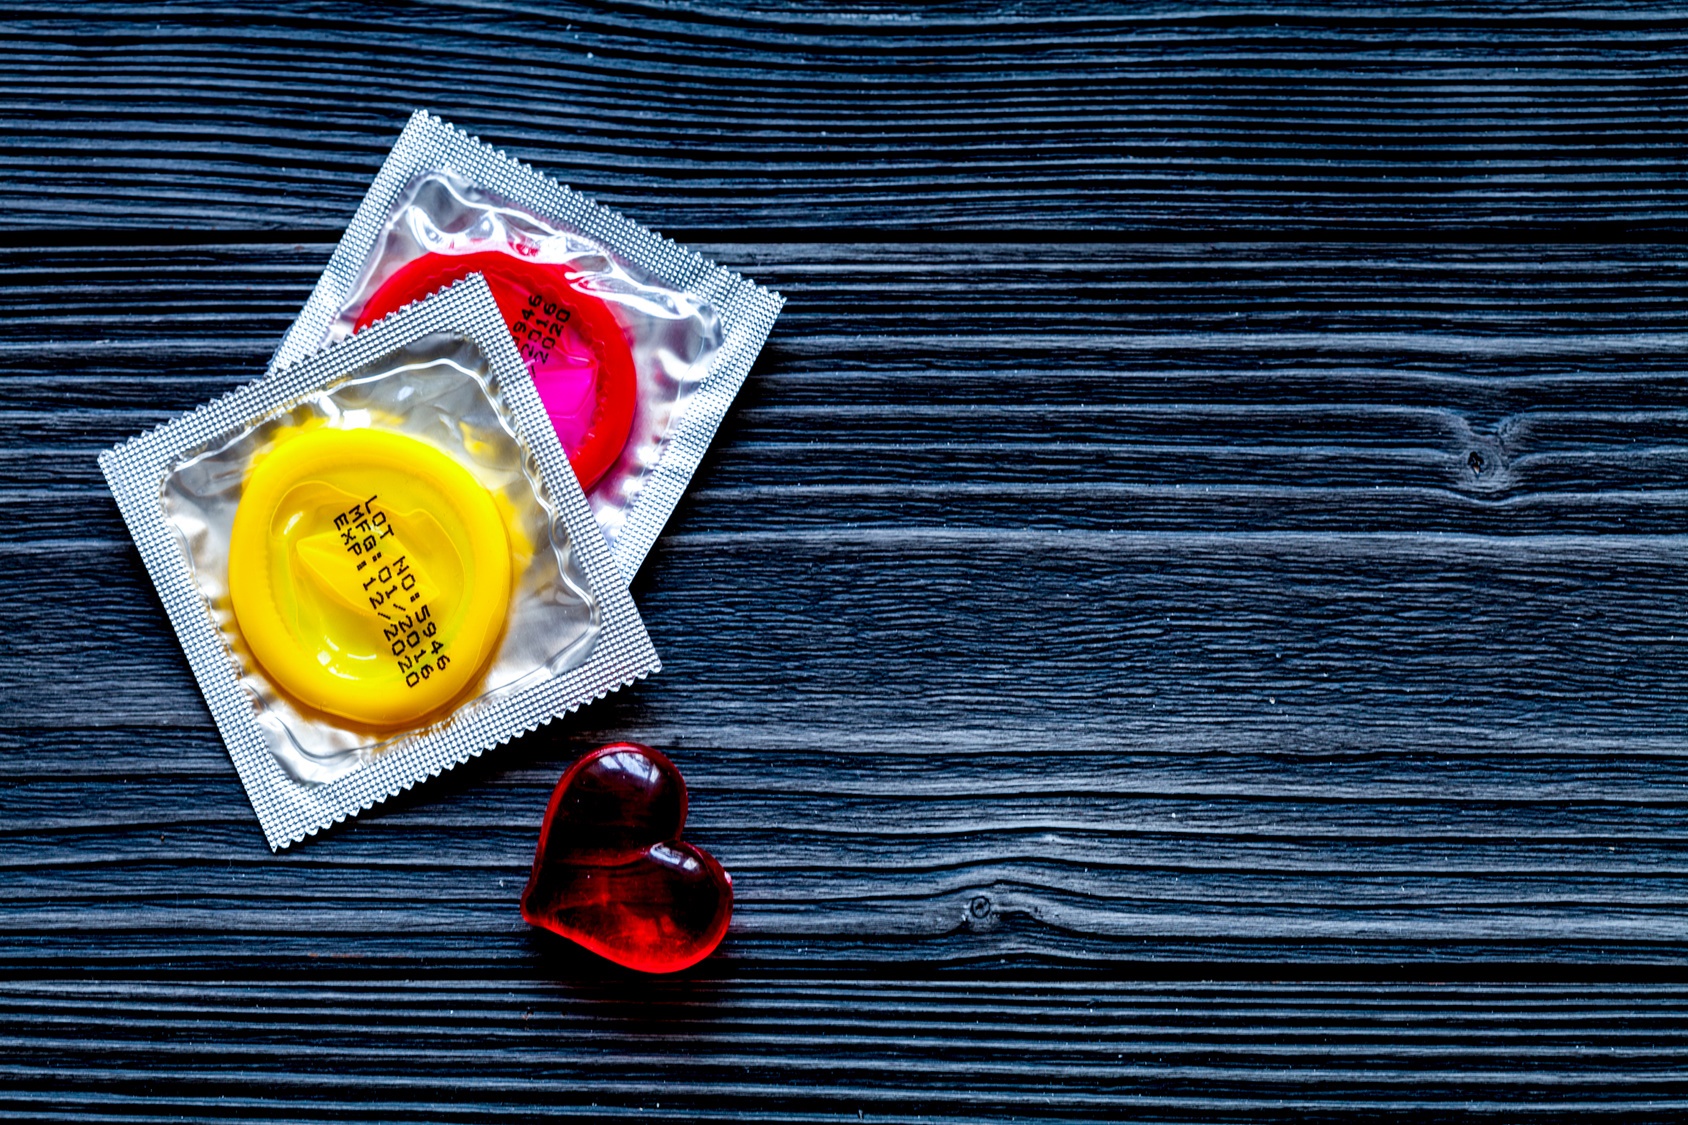 Le préservatif protège efficacement contre les infections sexuellement transmissibles et les grossesses non désirées. Cette étude avance qu'il favoriserait également l'implantation d'une flore vaginale bienfaitrice. © 279photo, Fotolia